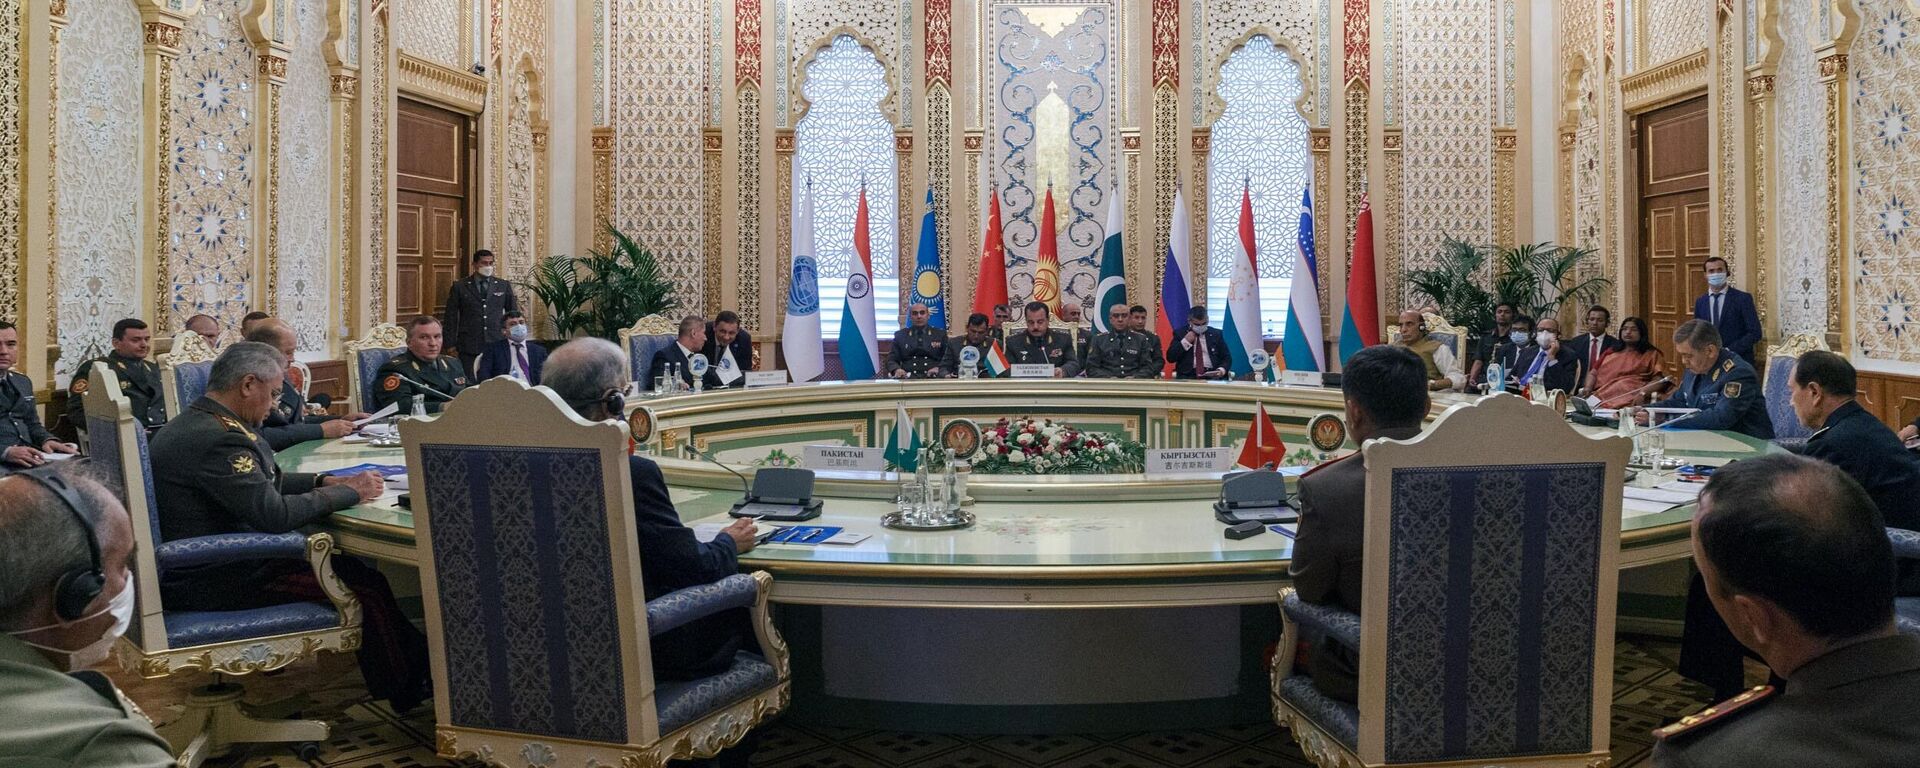 Совещание министров обороны стран ШОС в Душанбе - Sputnik Таджикистан, 1920, 28.07.2021